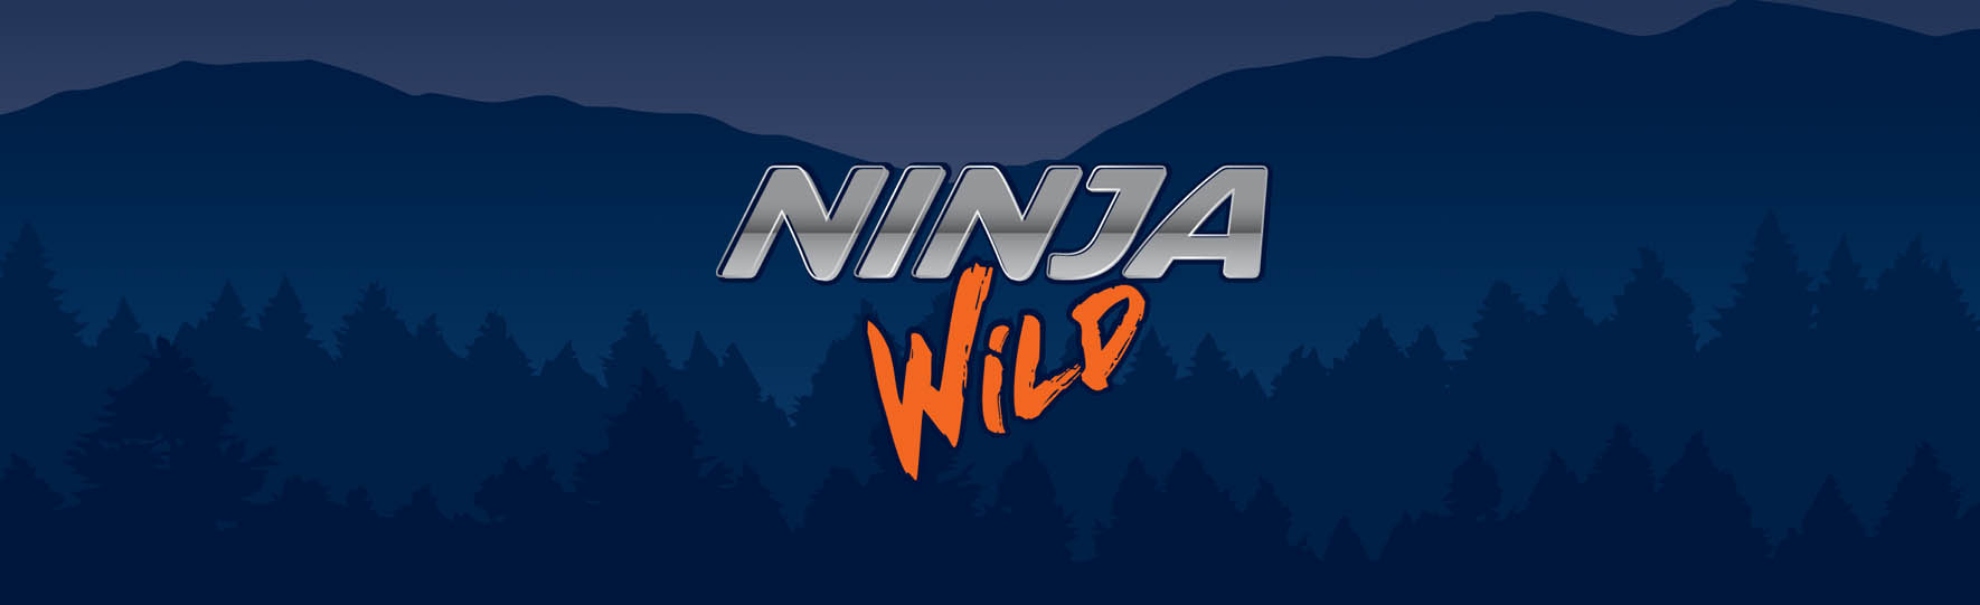 Ninja Wild